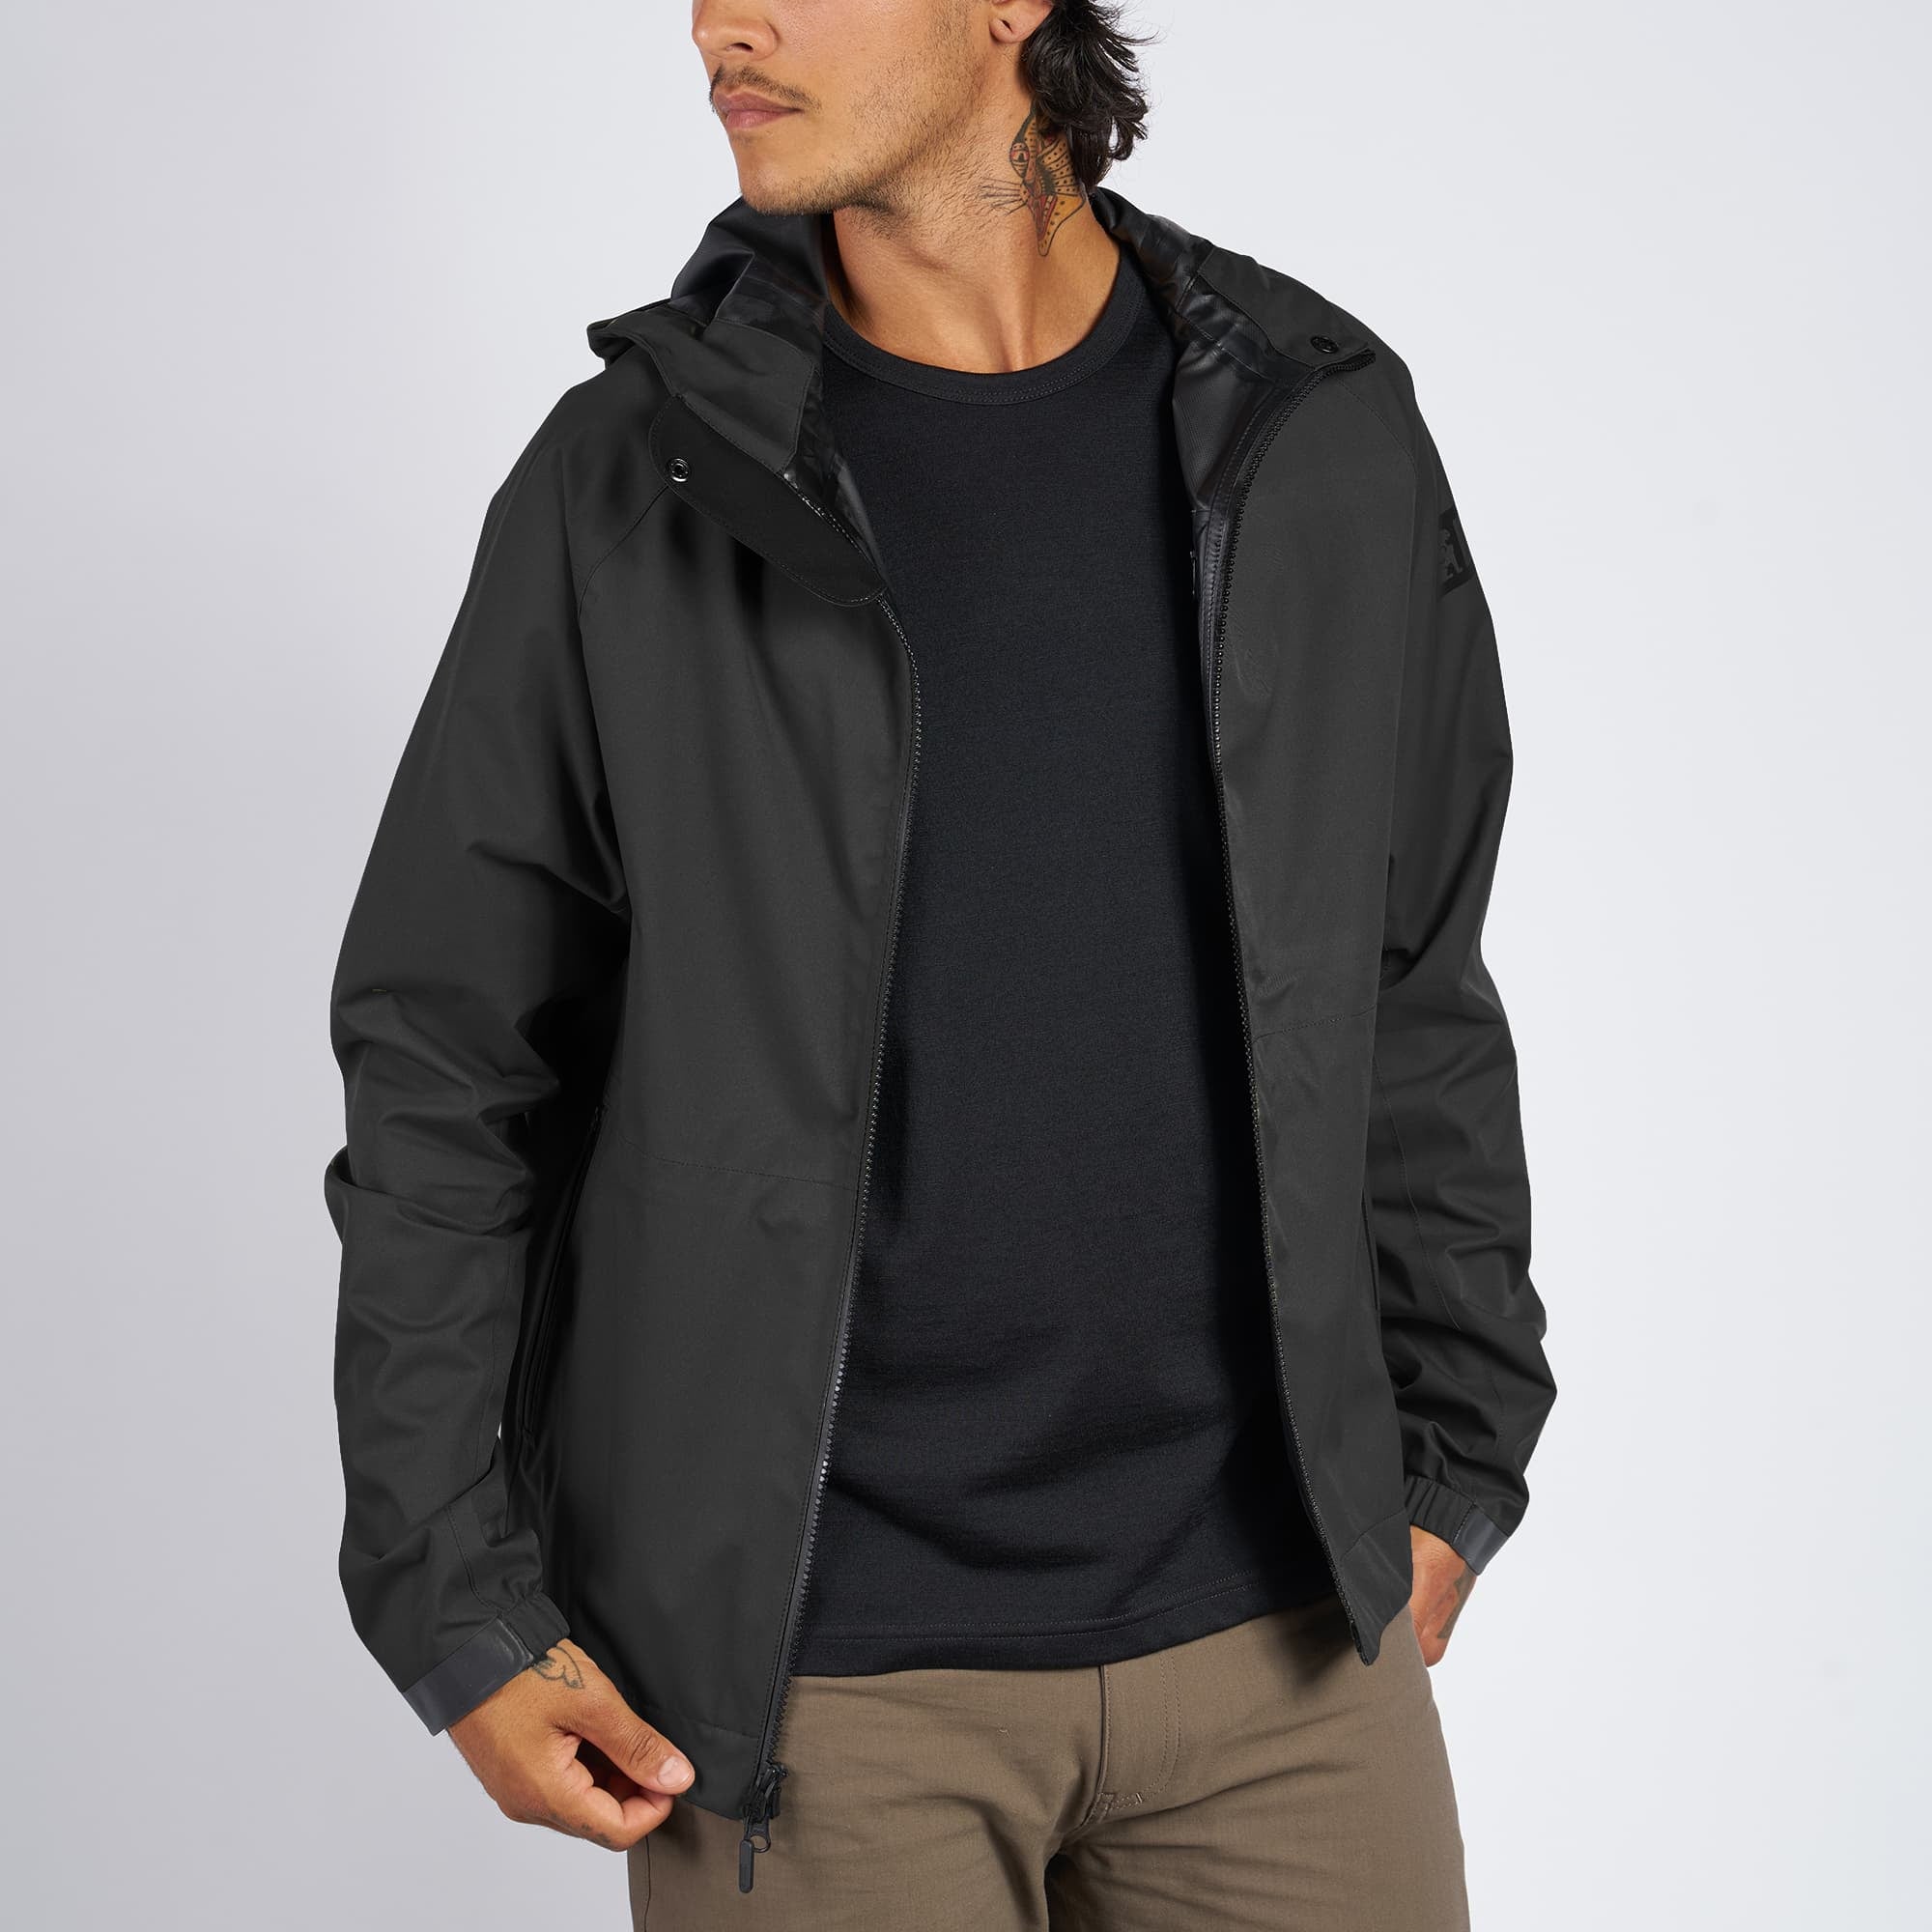 Waterproof rain jacket in black worn by a man